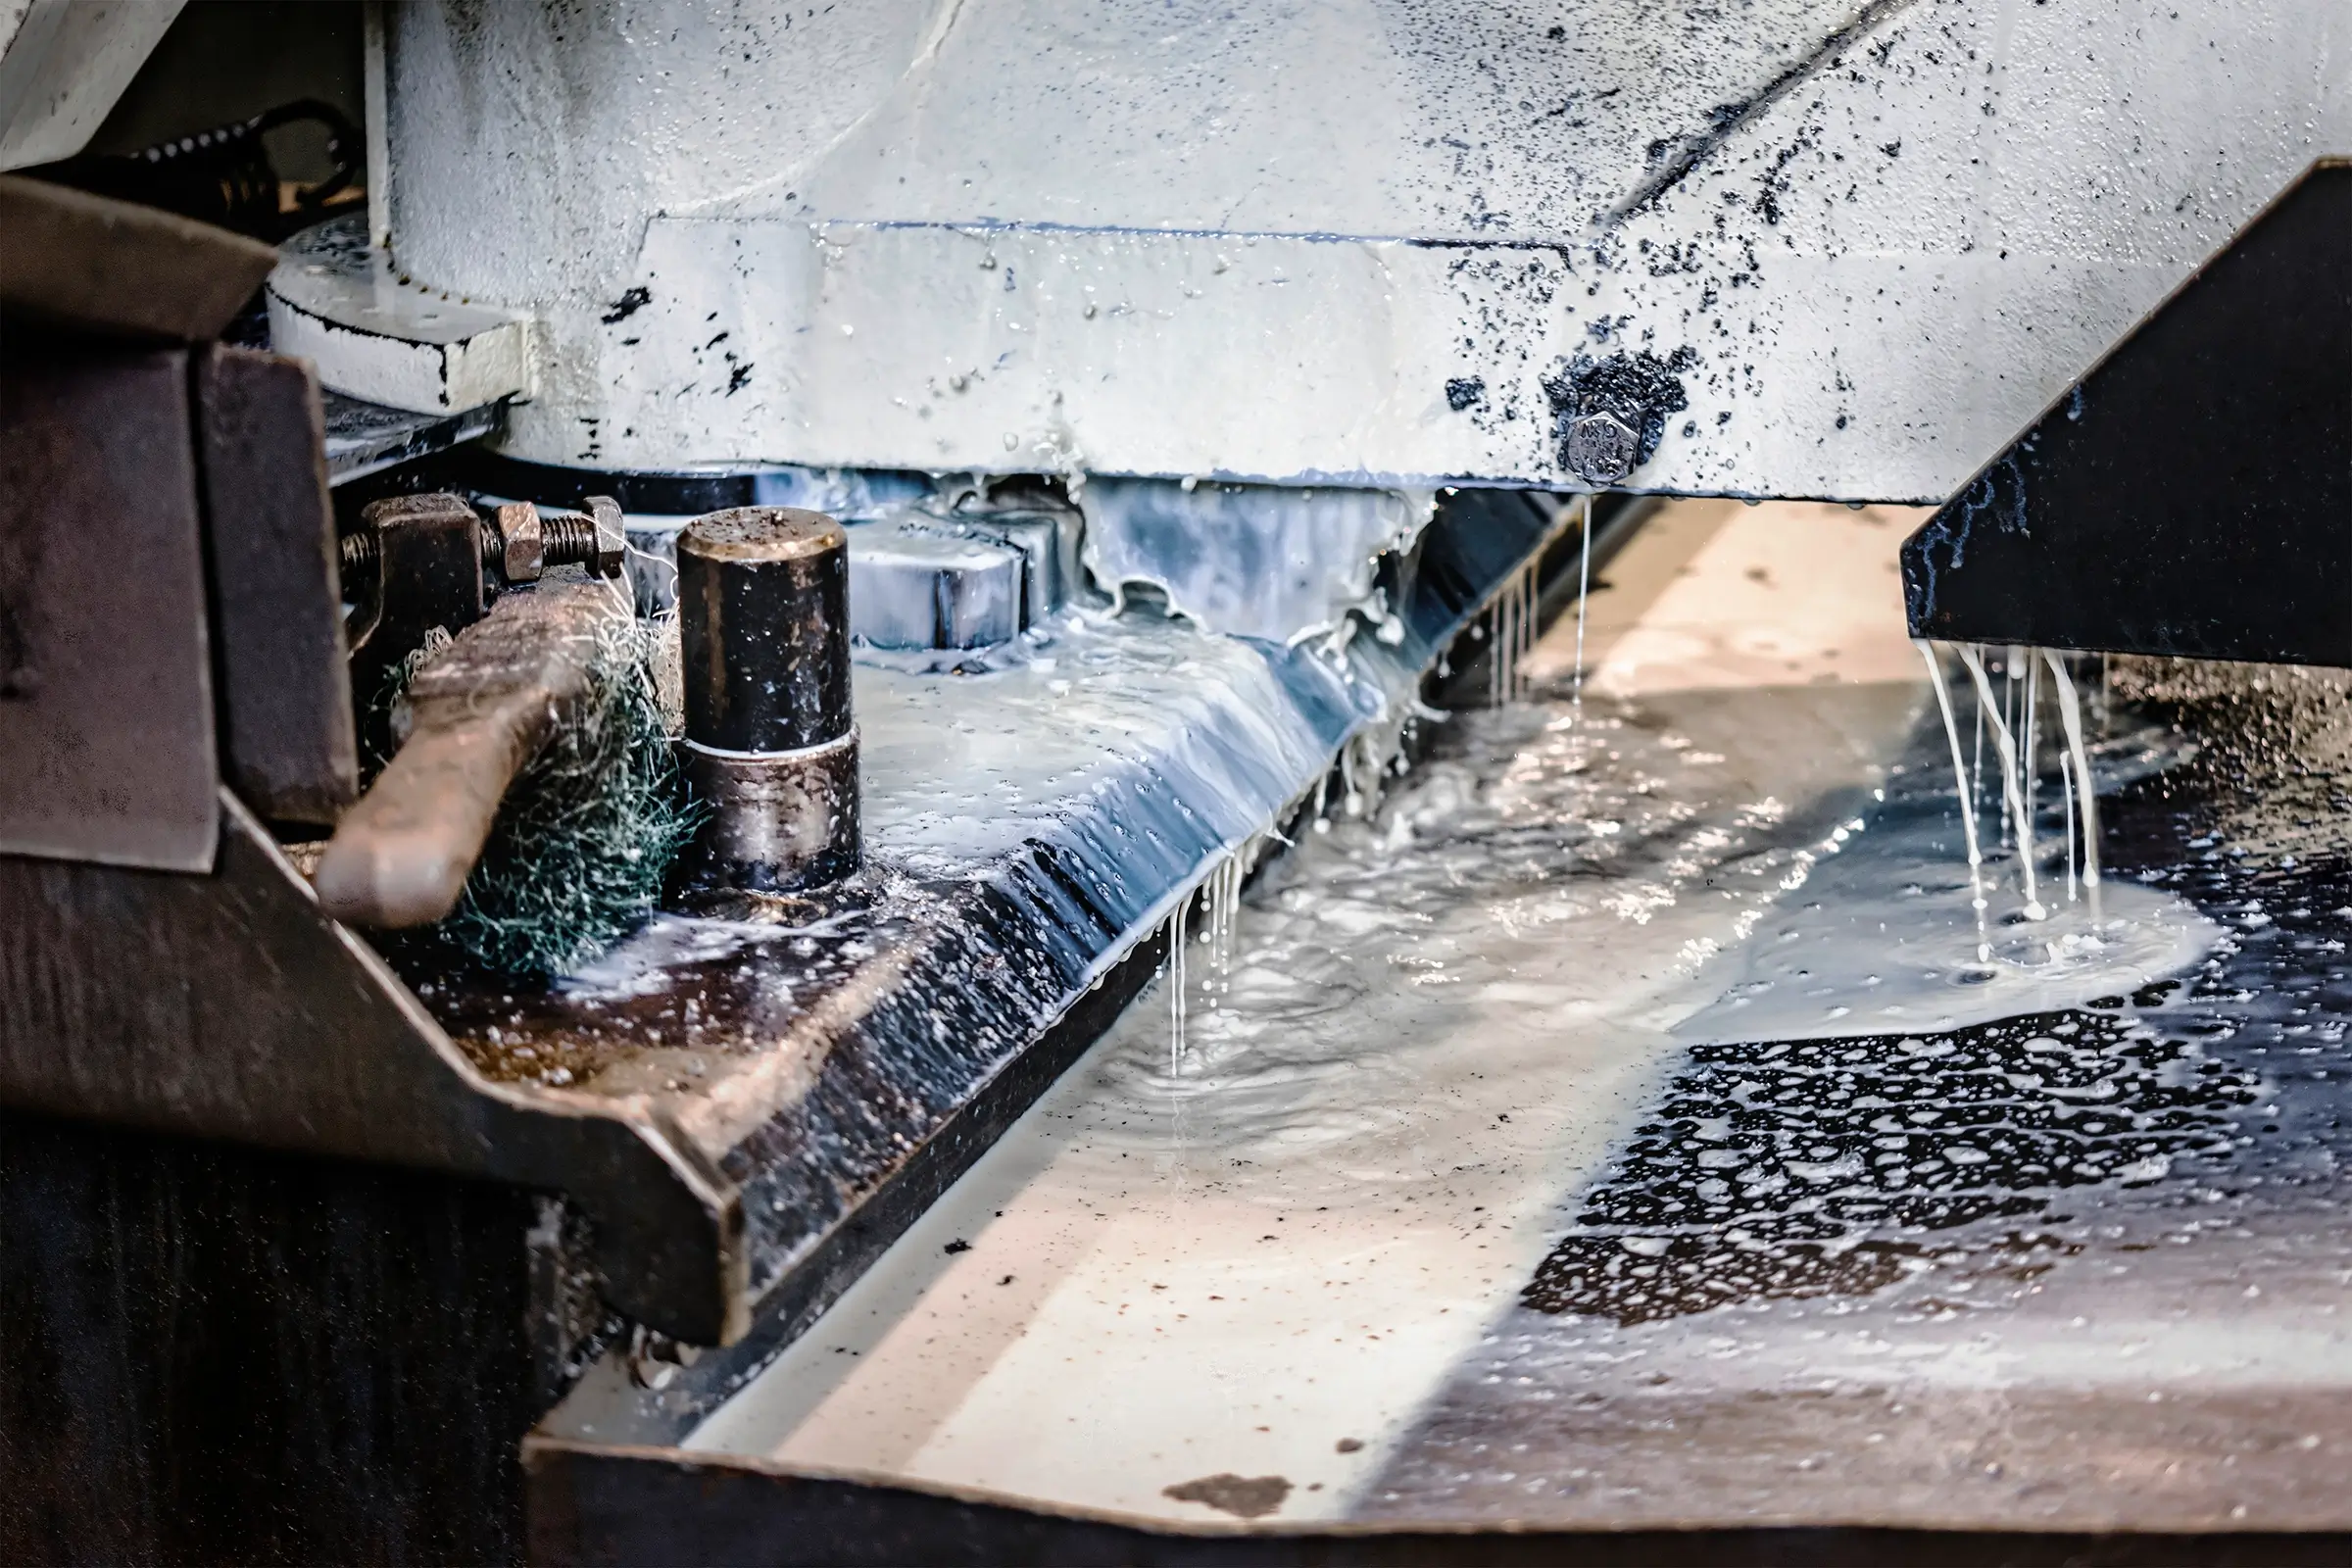 Zimmermann maschine zum schneiden von metallprofilen die saege schneidet metallrohlinge in stuecke industrieanlagen zum schneiden und bearbeiten von metall